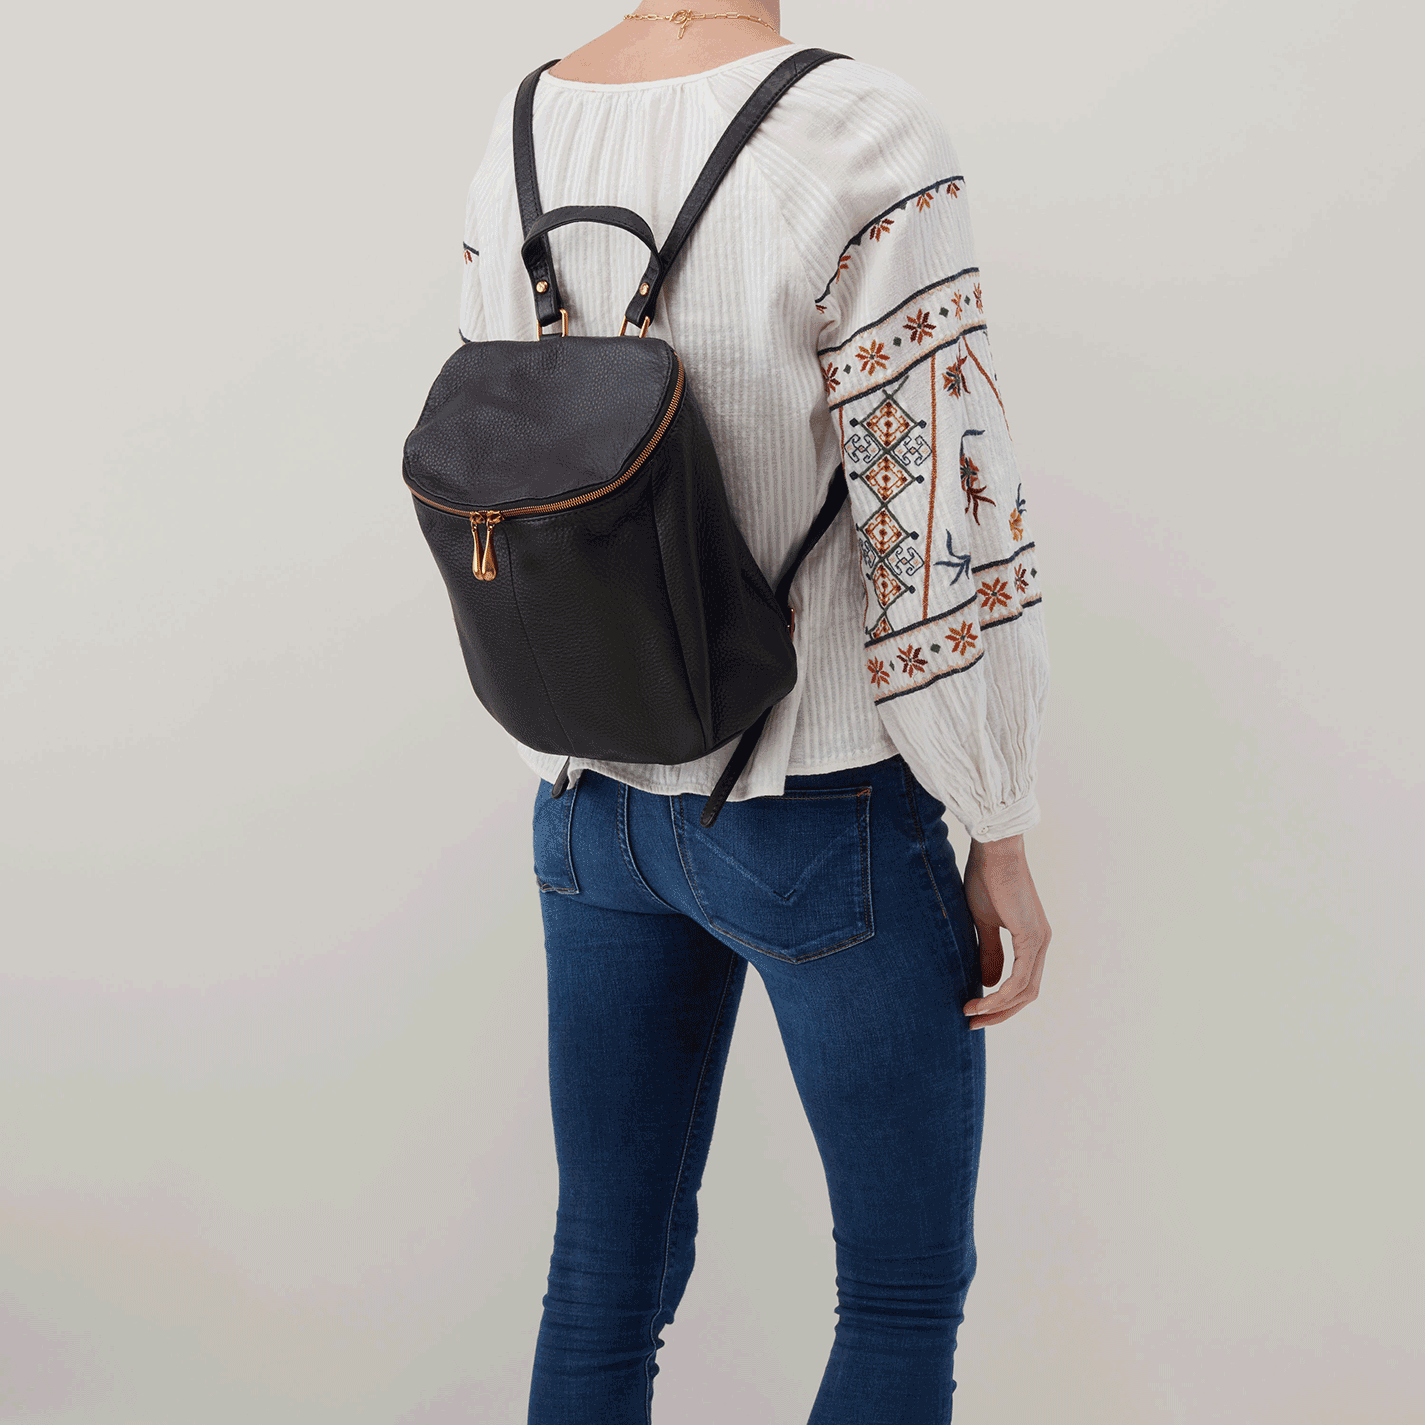 Tan Hobo International Vespa Convertible Backpack Leather Purse | eBay